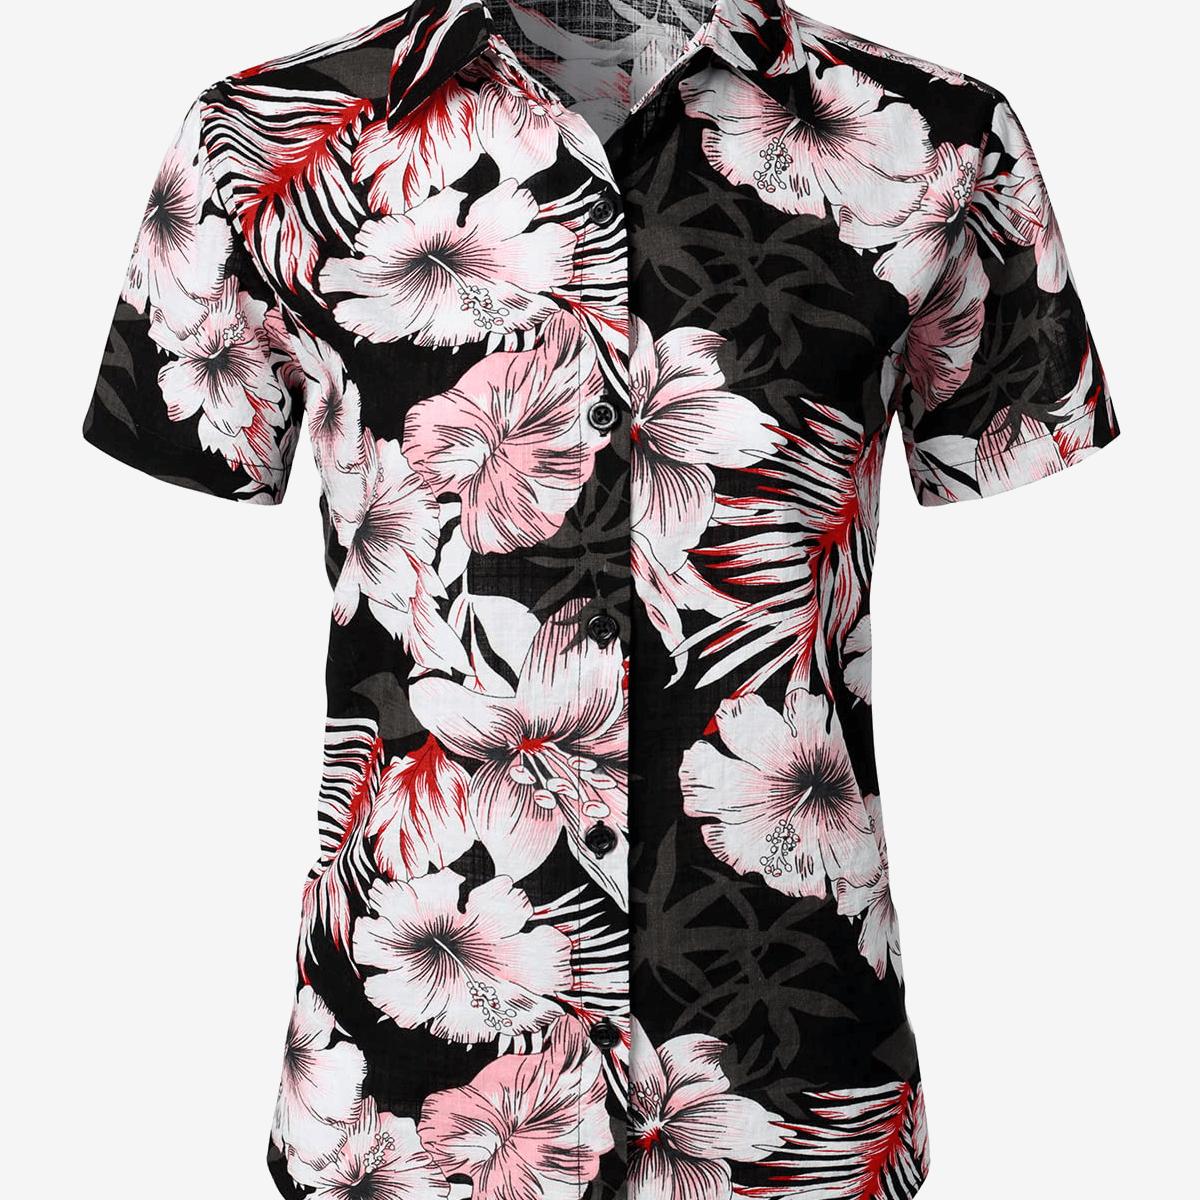 Women's Floral Print Blouse Flower Hawaiian Cotton Short Sleeve Beach Summer Aloha Shirt